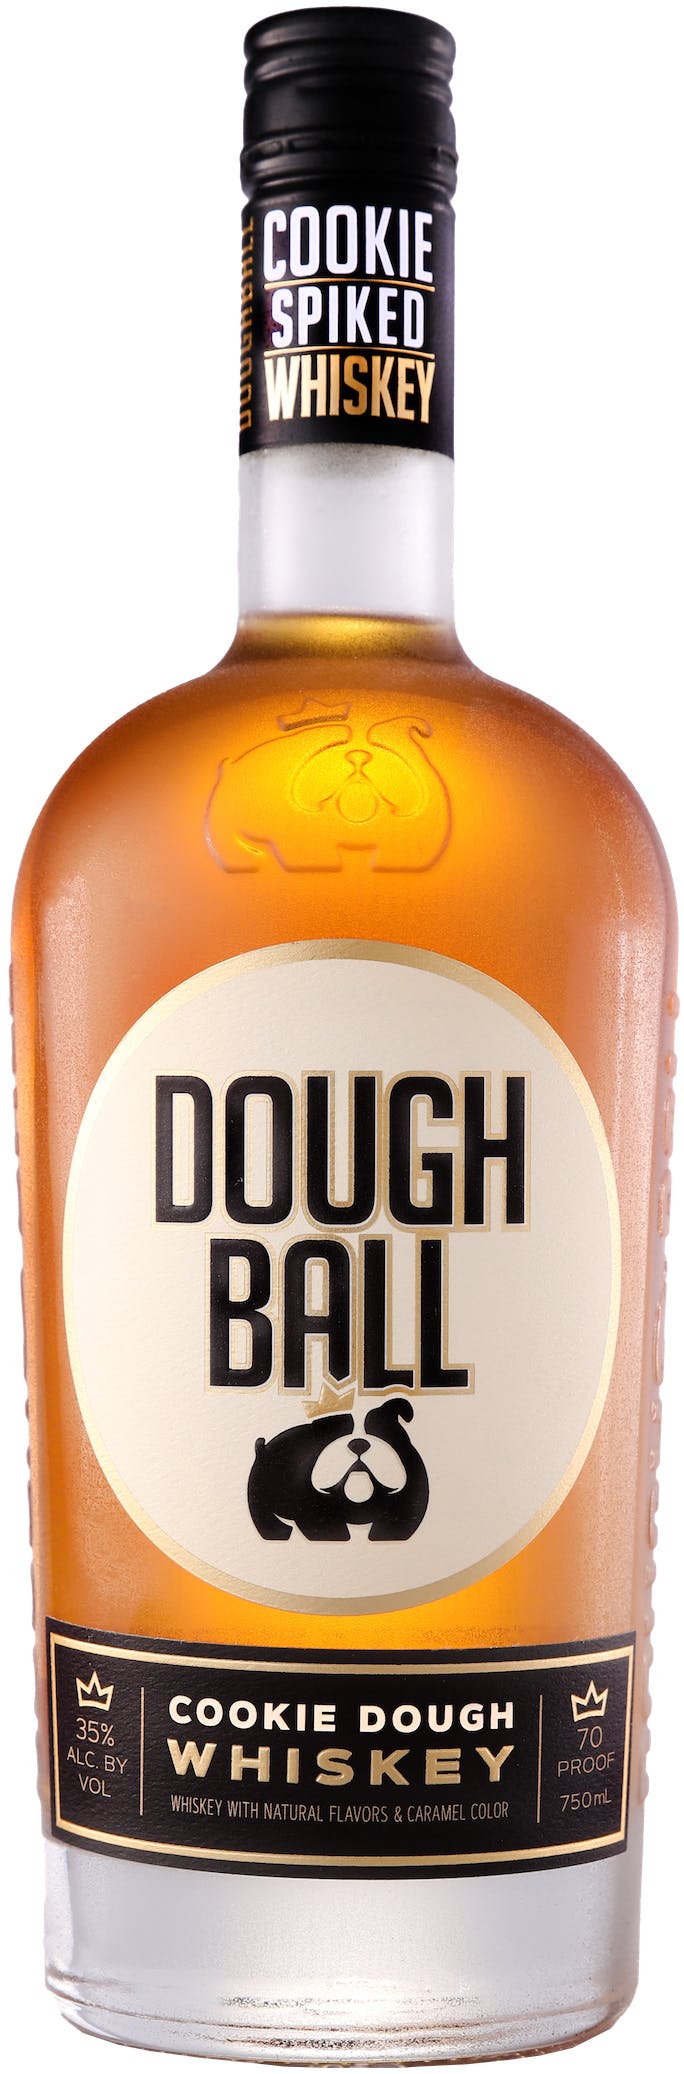 Dough Ball Cookie Dough Whiskey 6 / Case